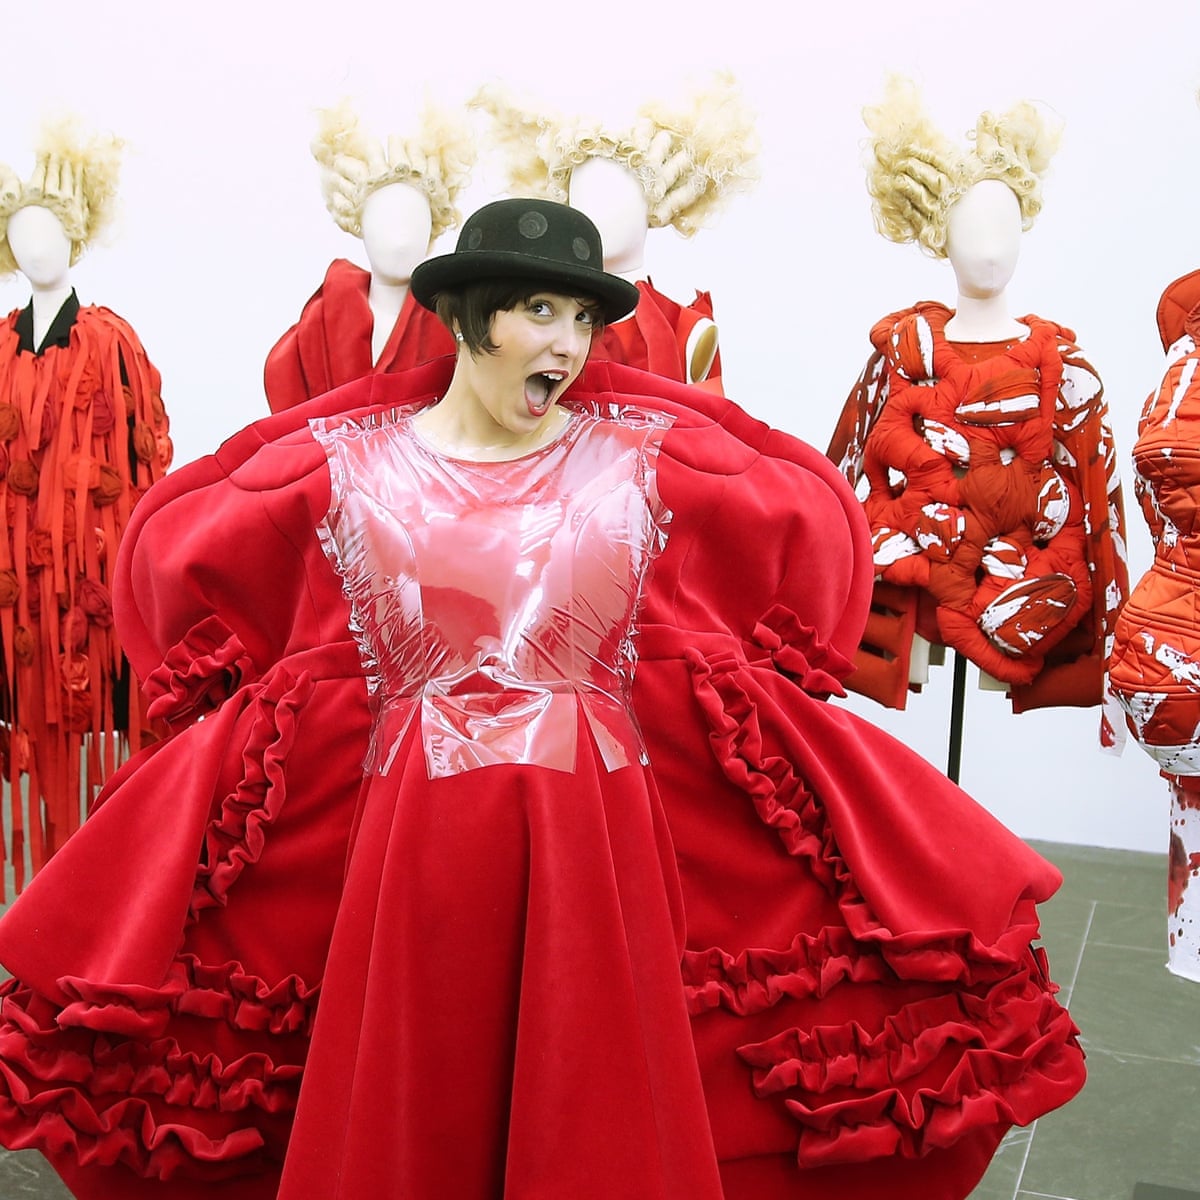 Rei Kawakubo: Reframing Fashion NGV | vlr.eng.br